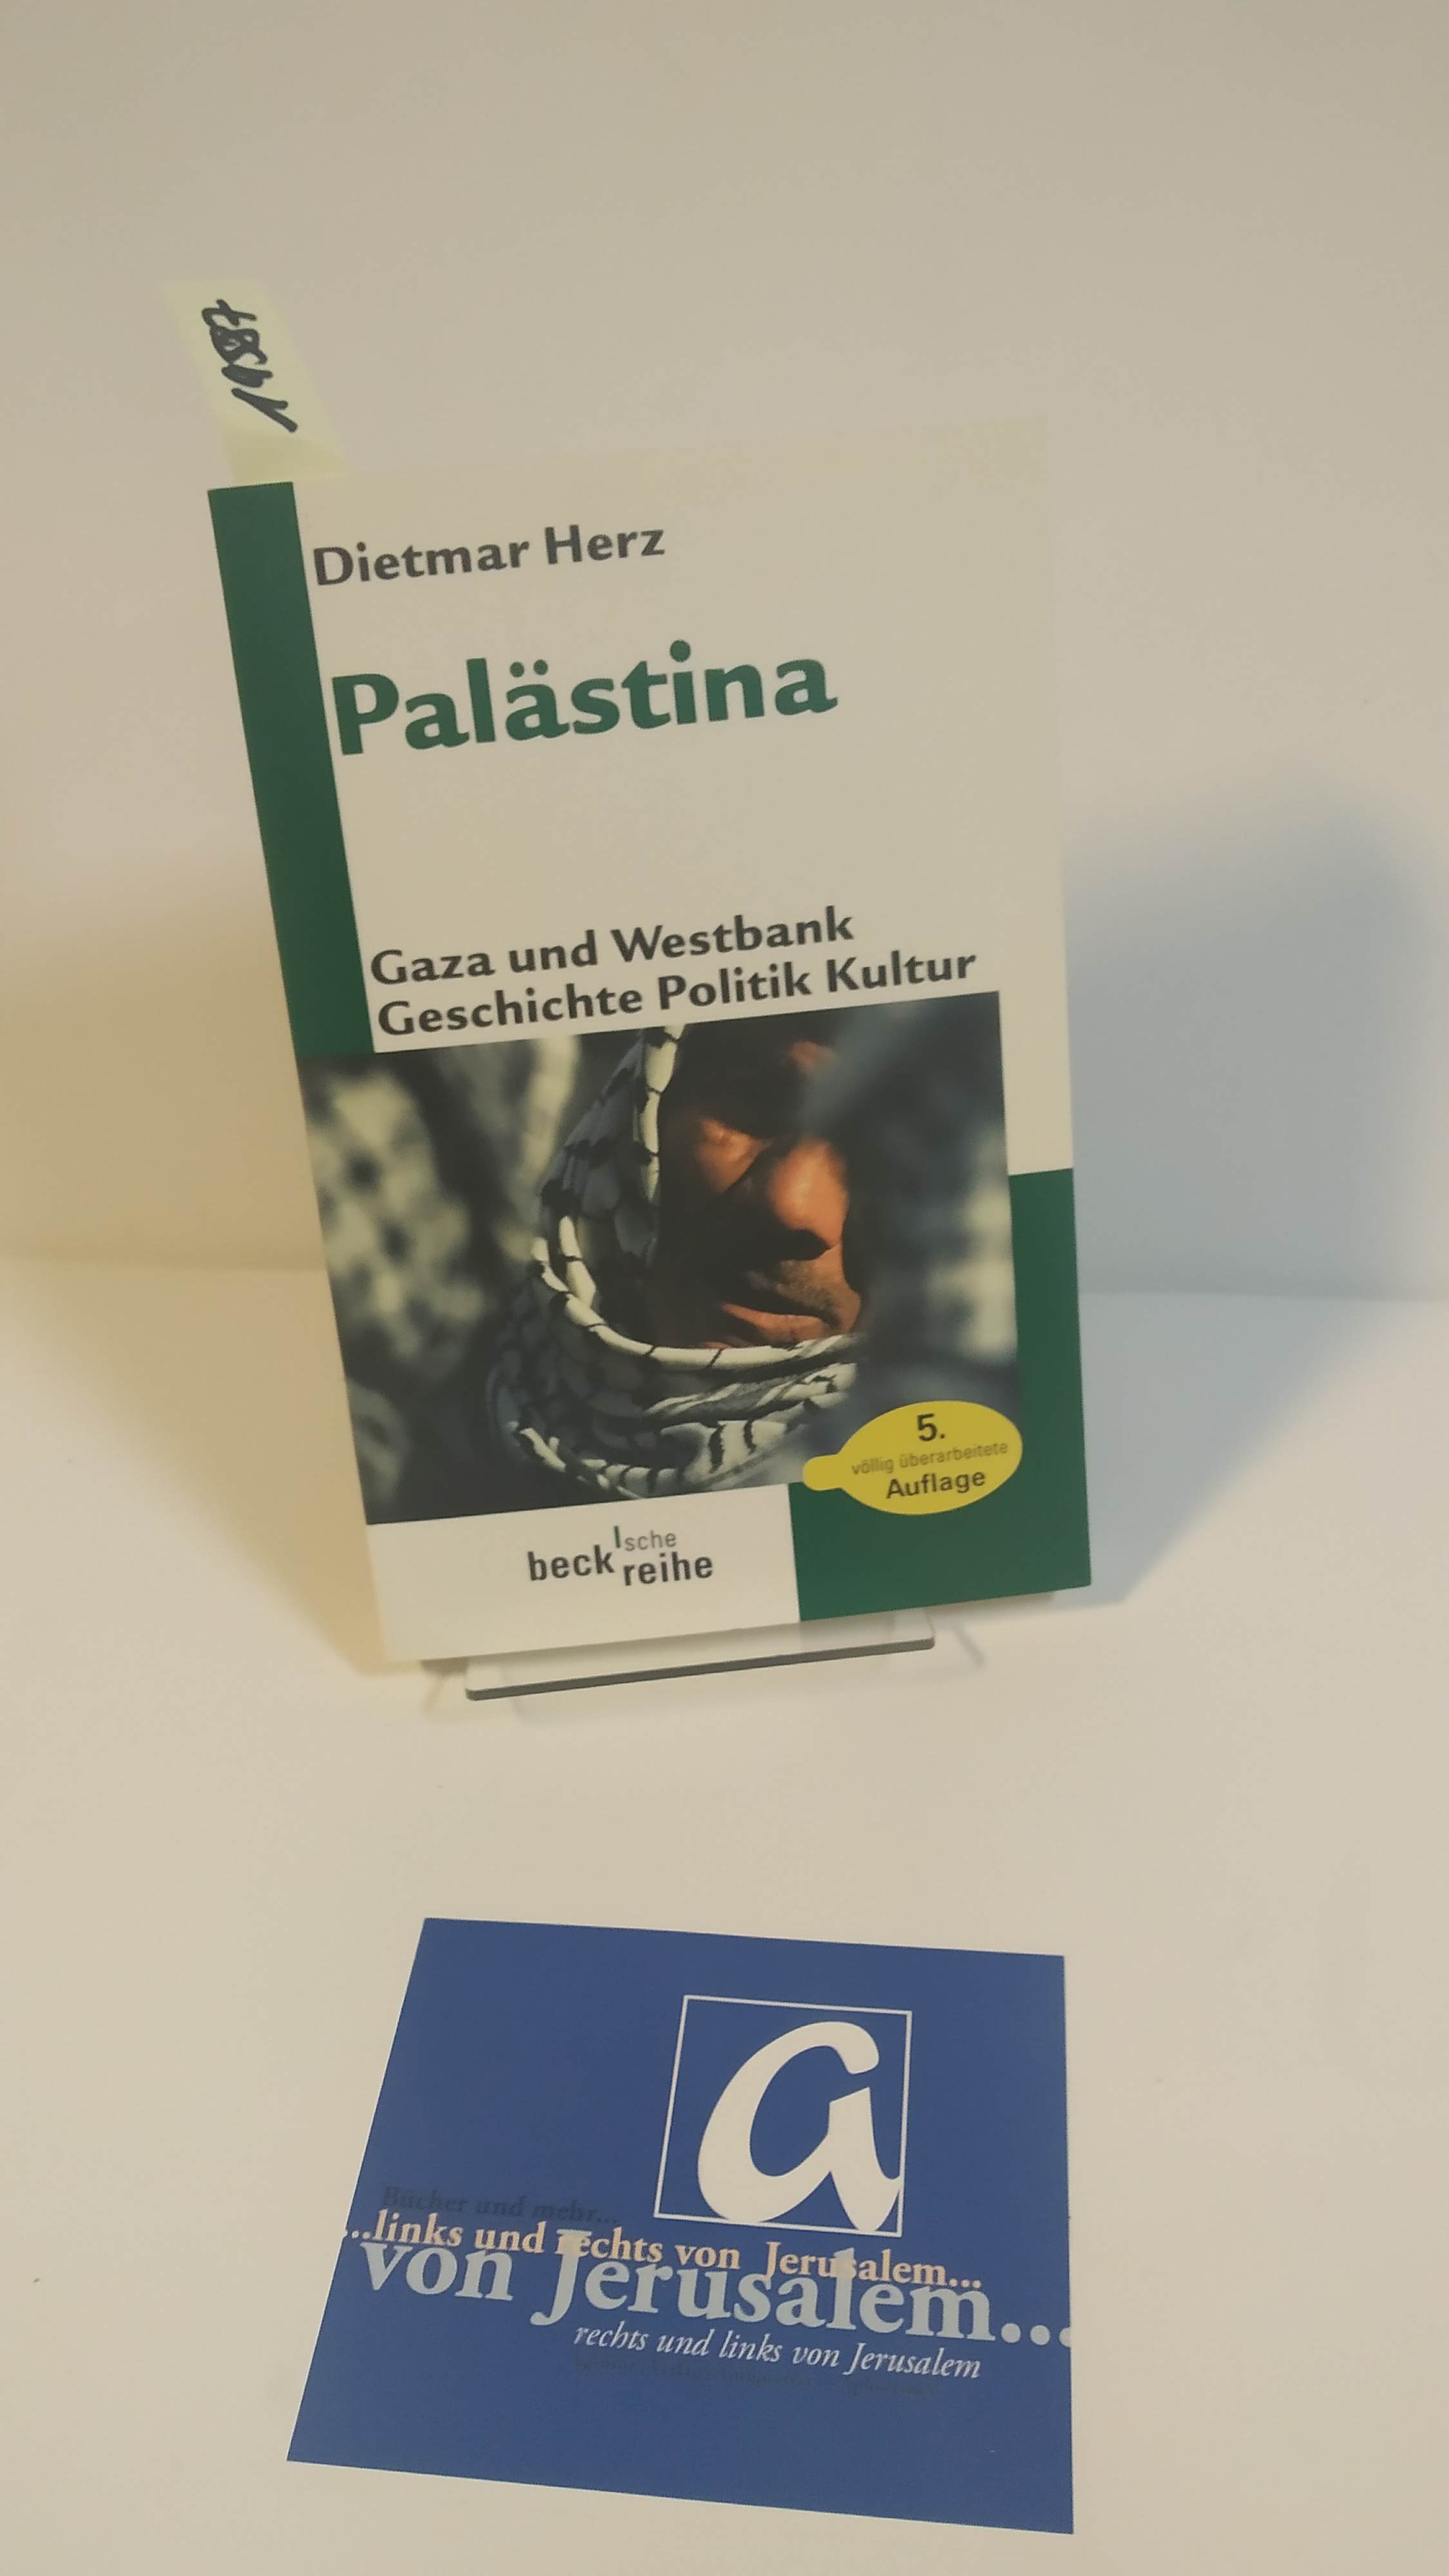 Palästina. Gaza und Westbank - Geschichte Politik Kultur. - Herz, Dietmar